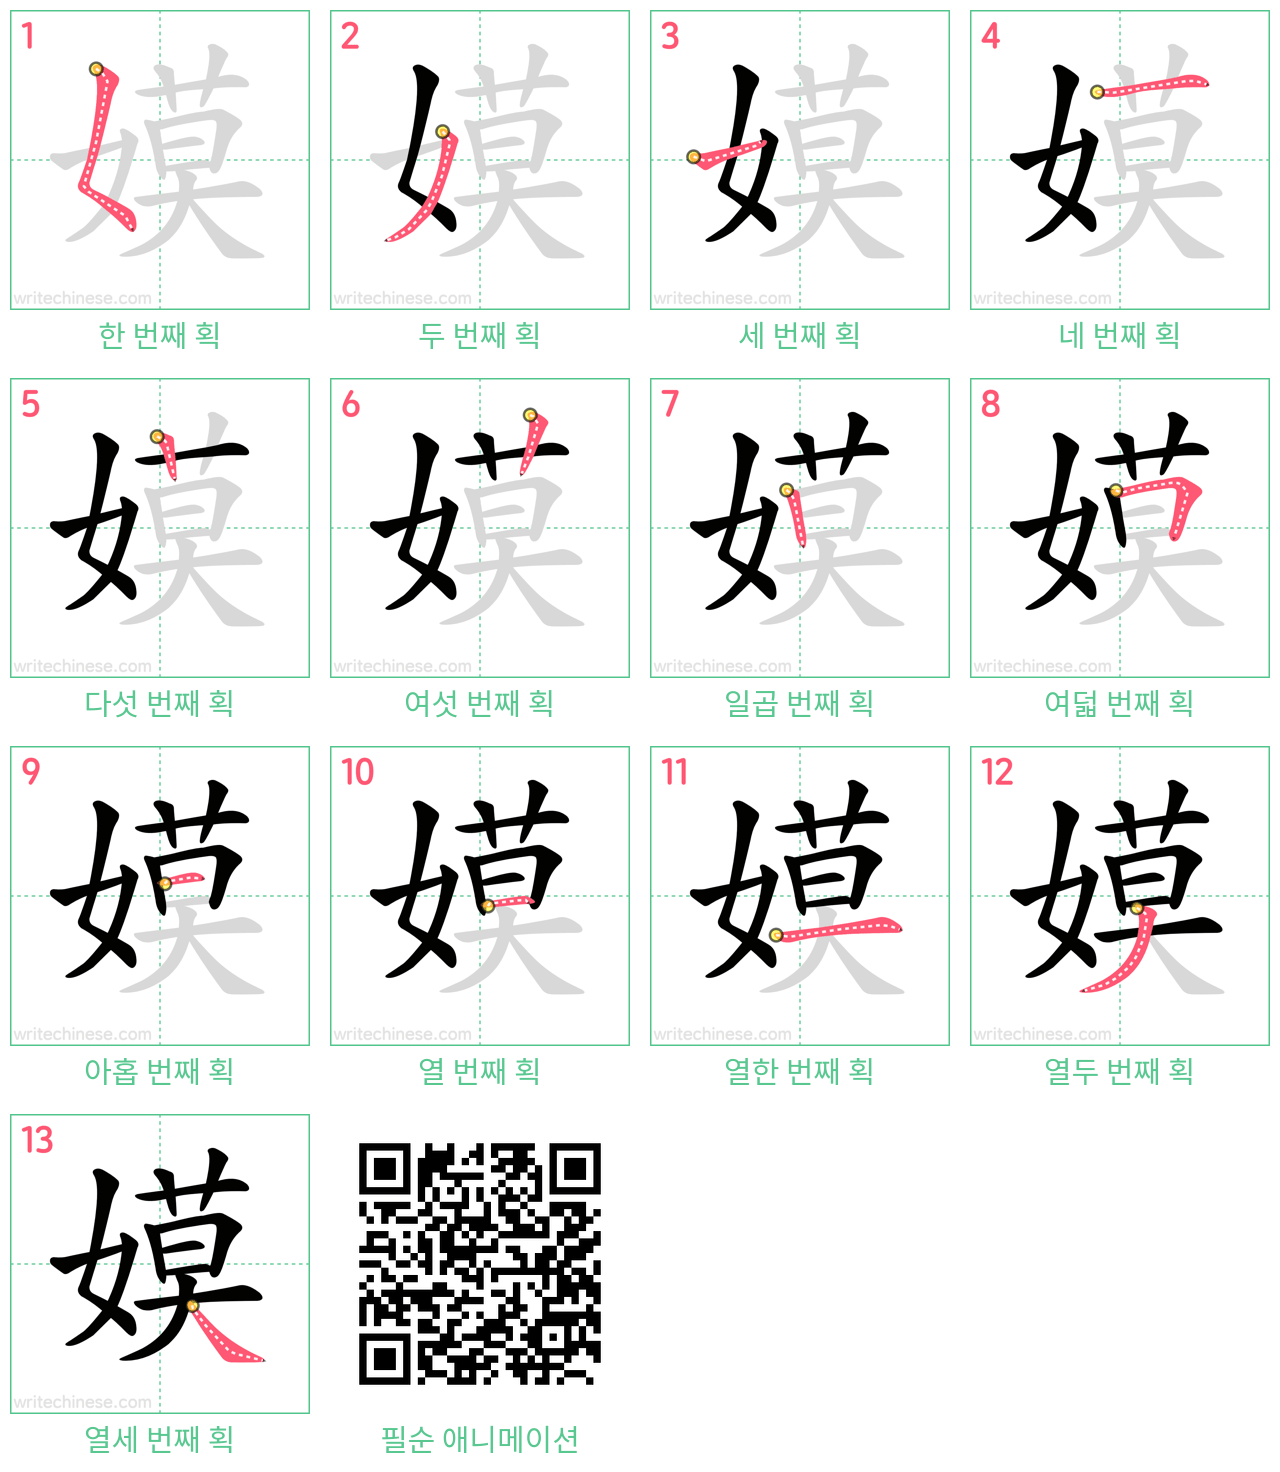 嫫 step-by-step stroke order diagrams